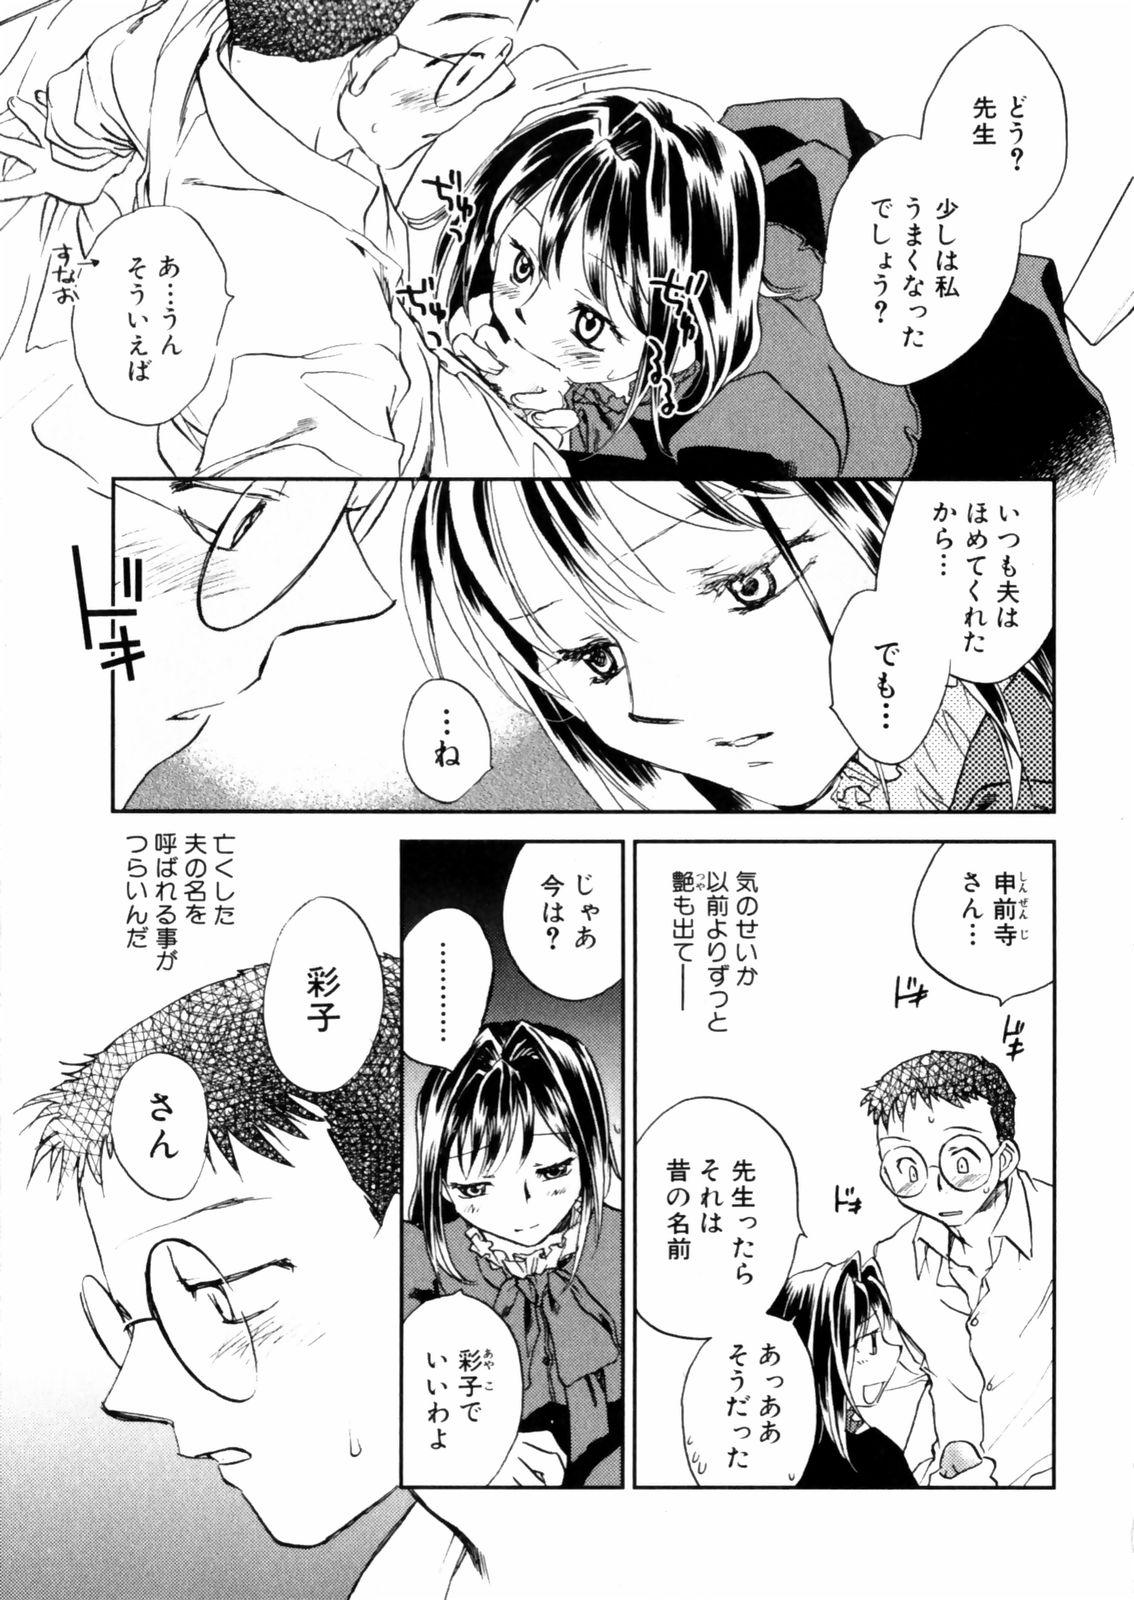 [Okano Ahiru] Hanasake ! Otome Juku (Otome Private Tutoring School) Vol.2 48